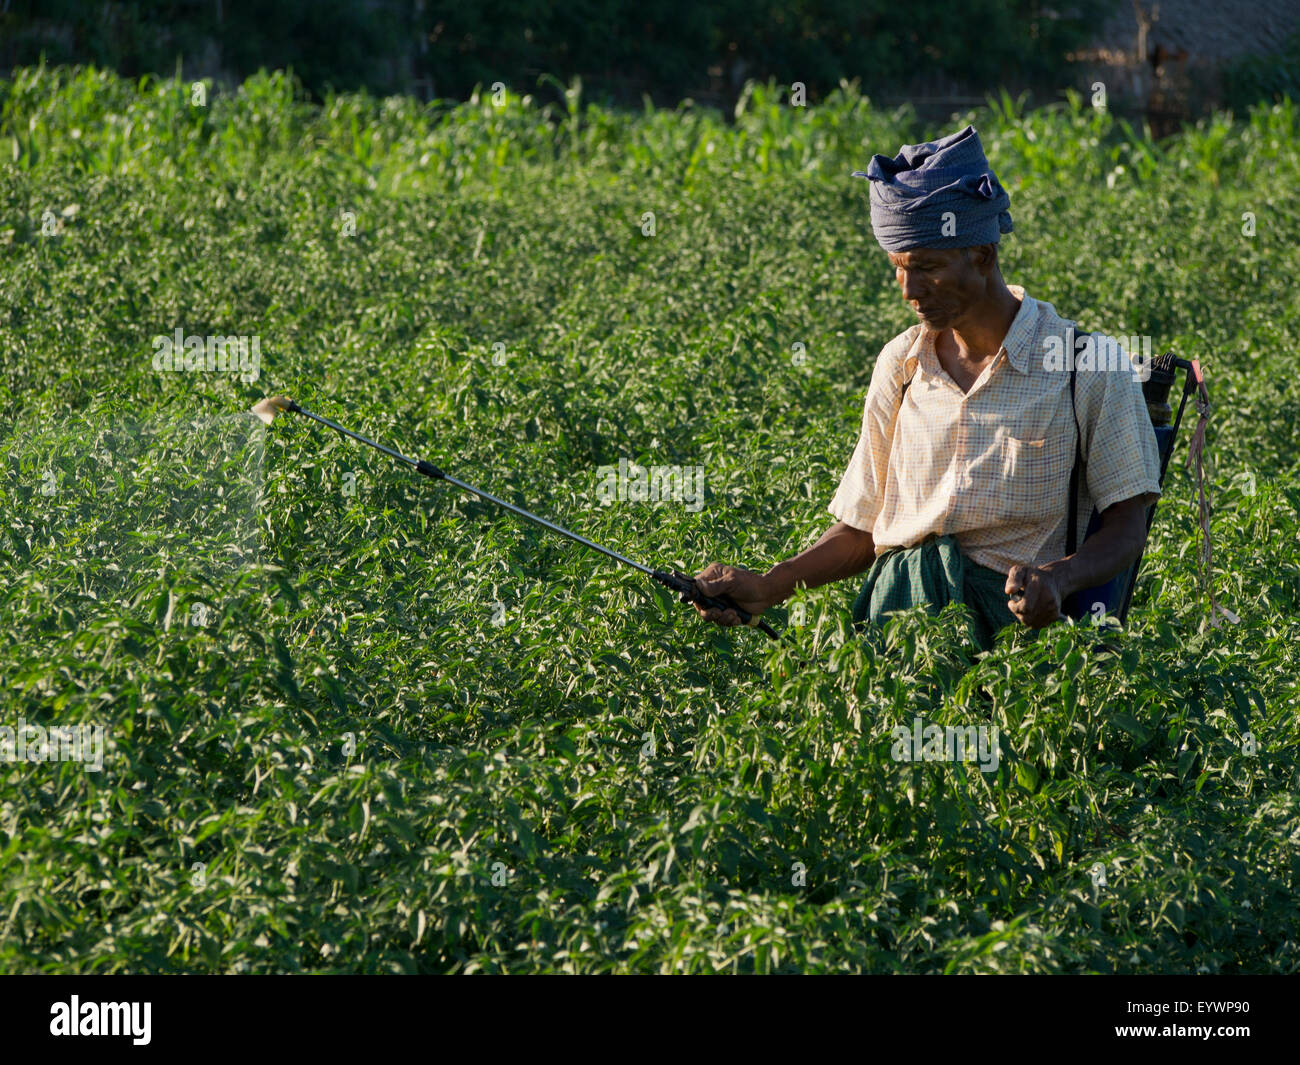 Agricoltore facendo lavori agricoli in un campo dal fiume Irrawaddy, Myanmar (Birmania), Asia Foto Stock